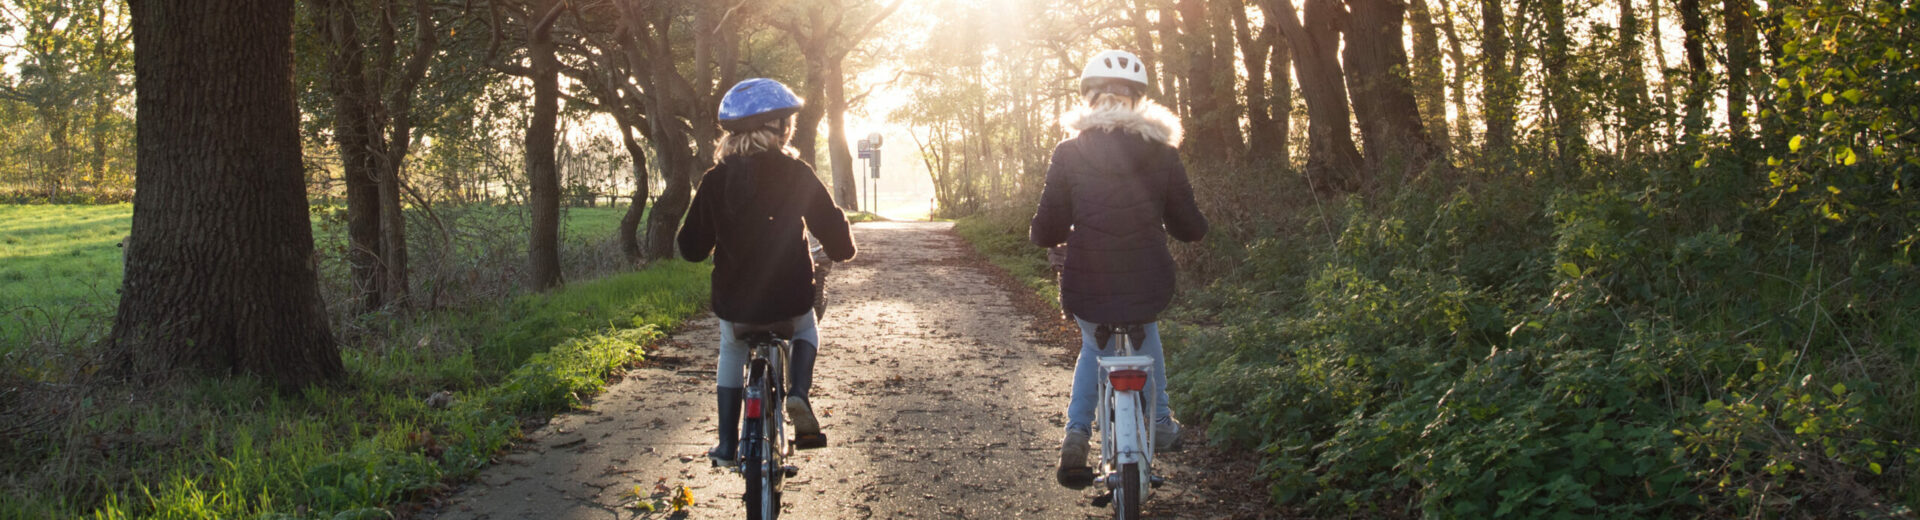 zwei Mädchen fahren auf einem Waldweg Fahrrad